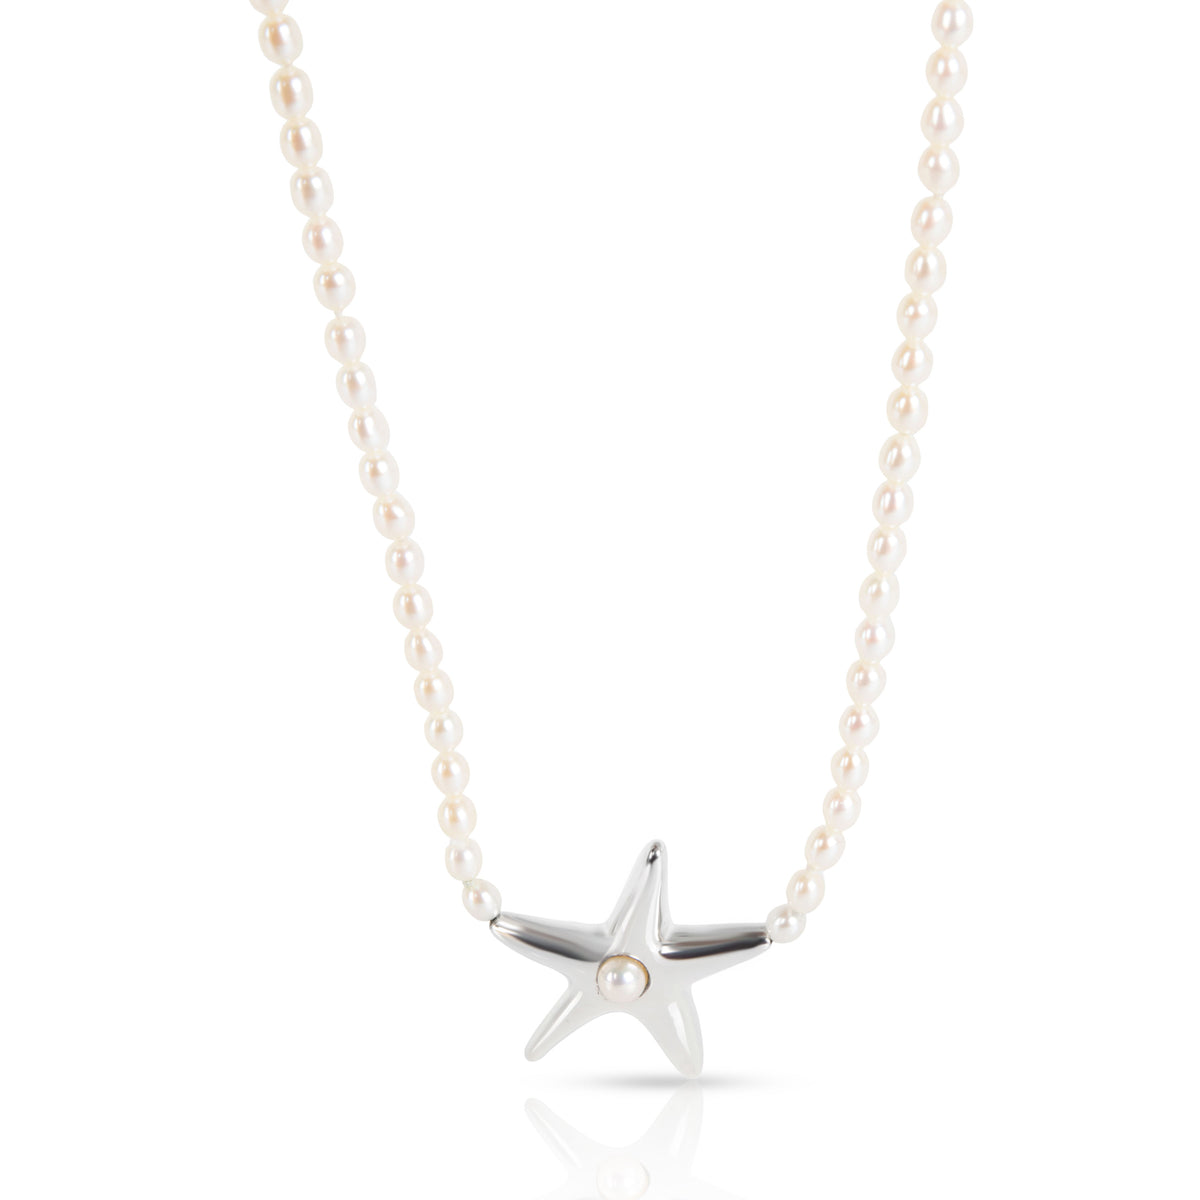 Tiffany & Co. Elsa Peretti Starfish Pearl Necklace in Sterling Silver